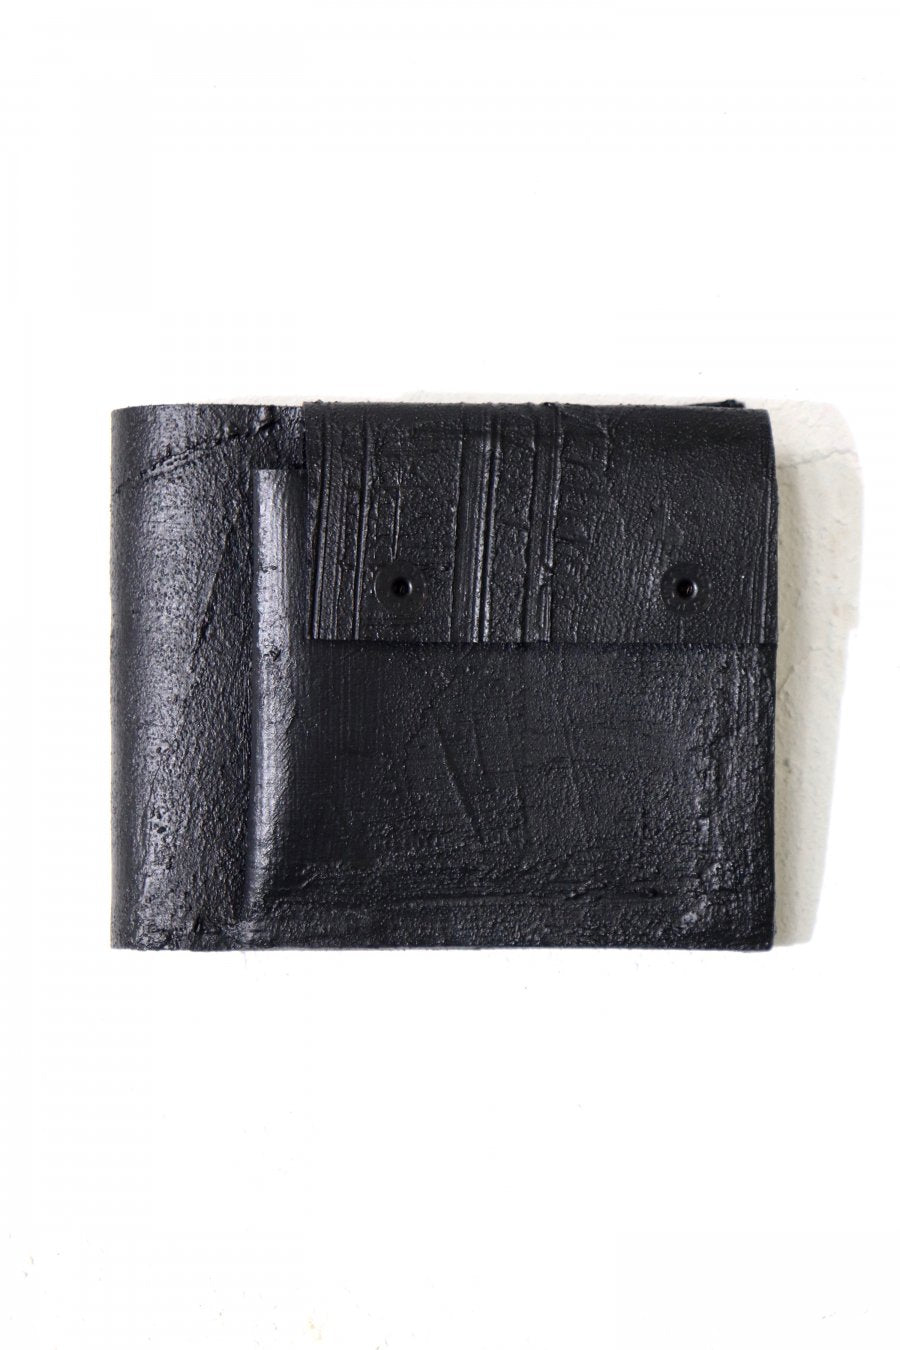 カガリユウスケ(KAGARI YUSUKE)の黒壁二つ折り財布(mw-06)の通販 